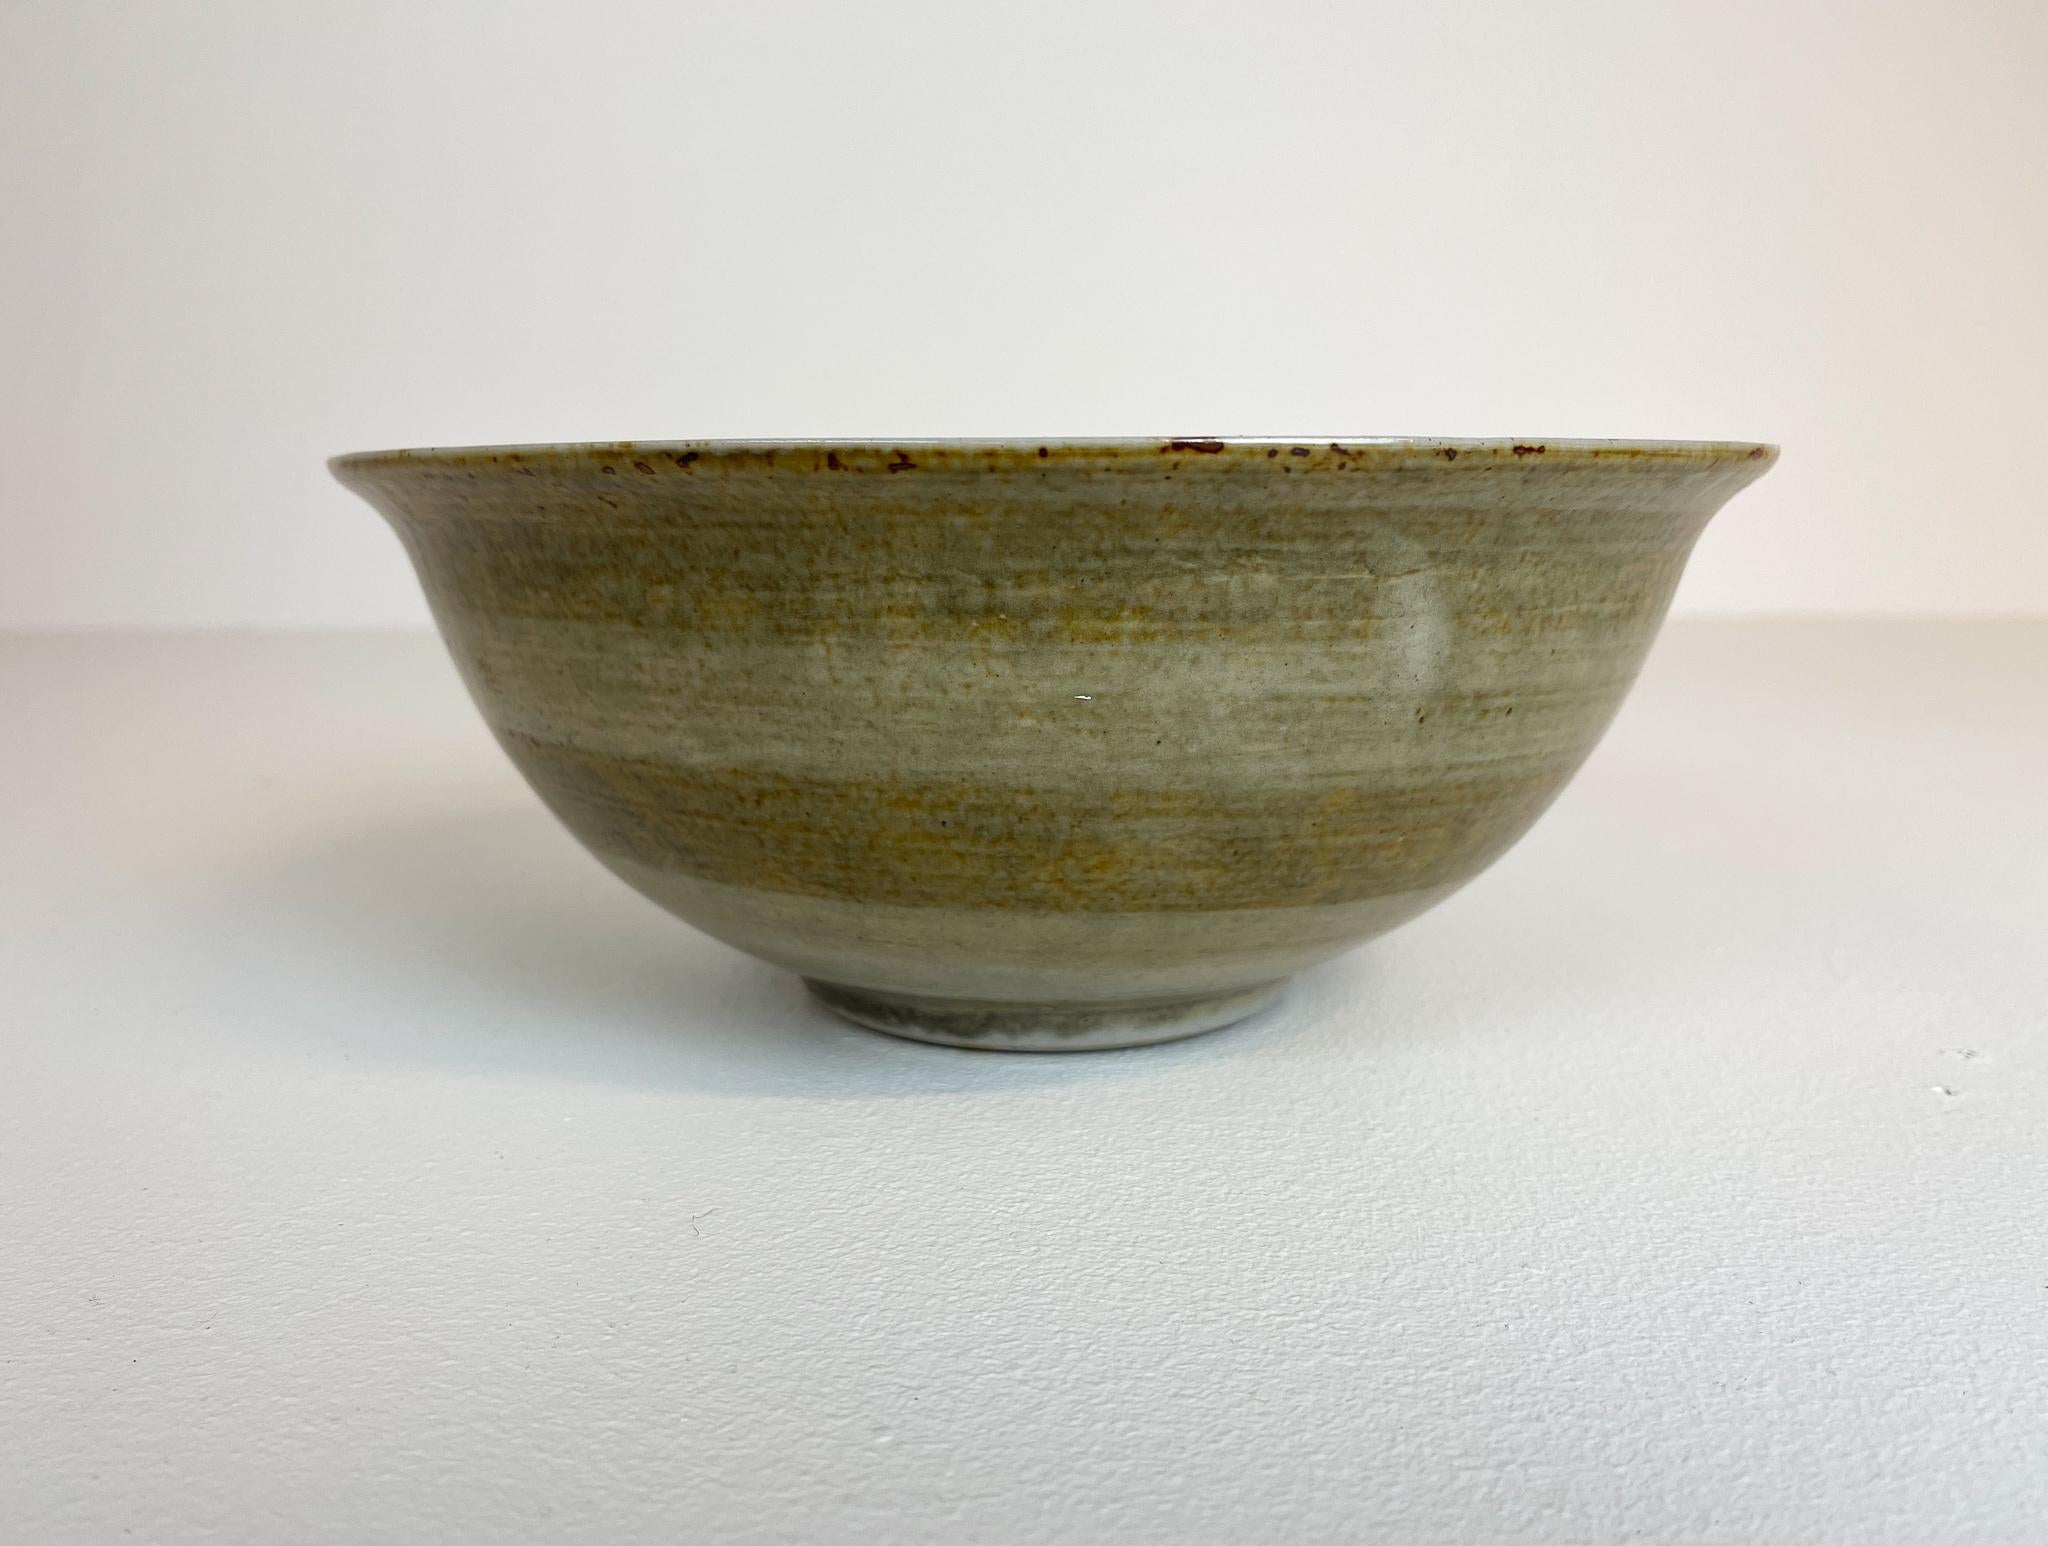 Scandinavian Modern Ceramic Bowls by Carl-Harry Stålhane Design Huset, Sweden For Sale 1